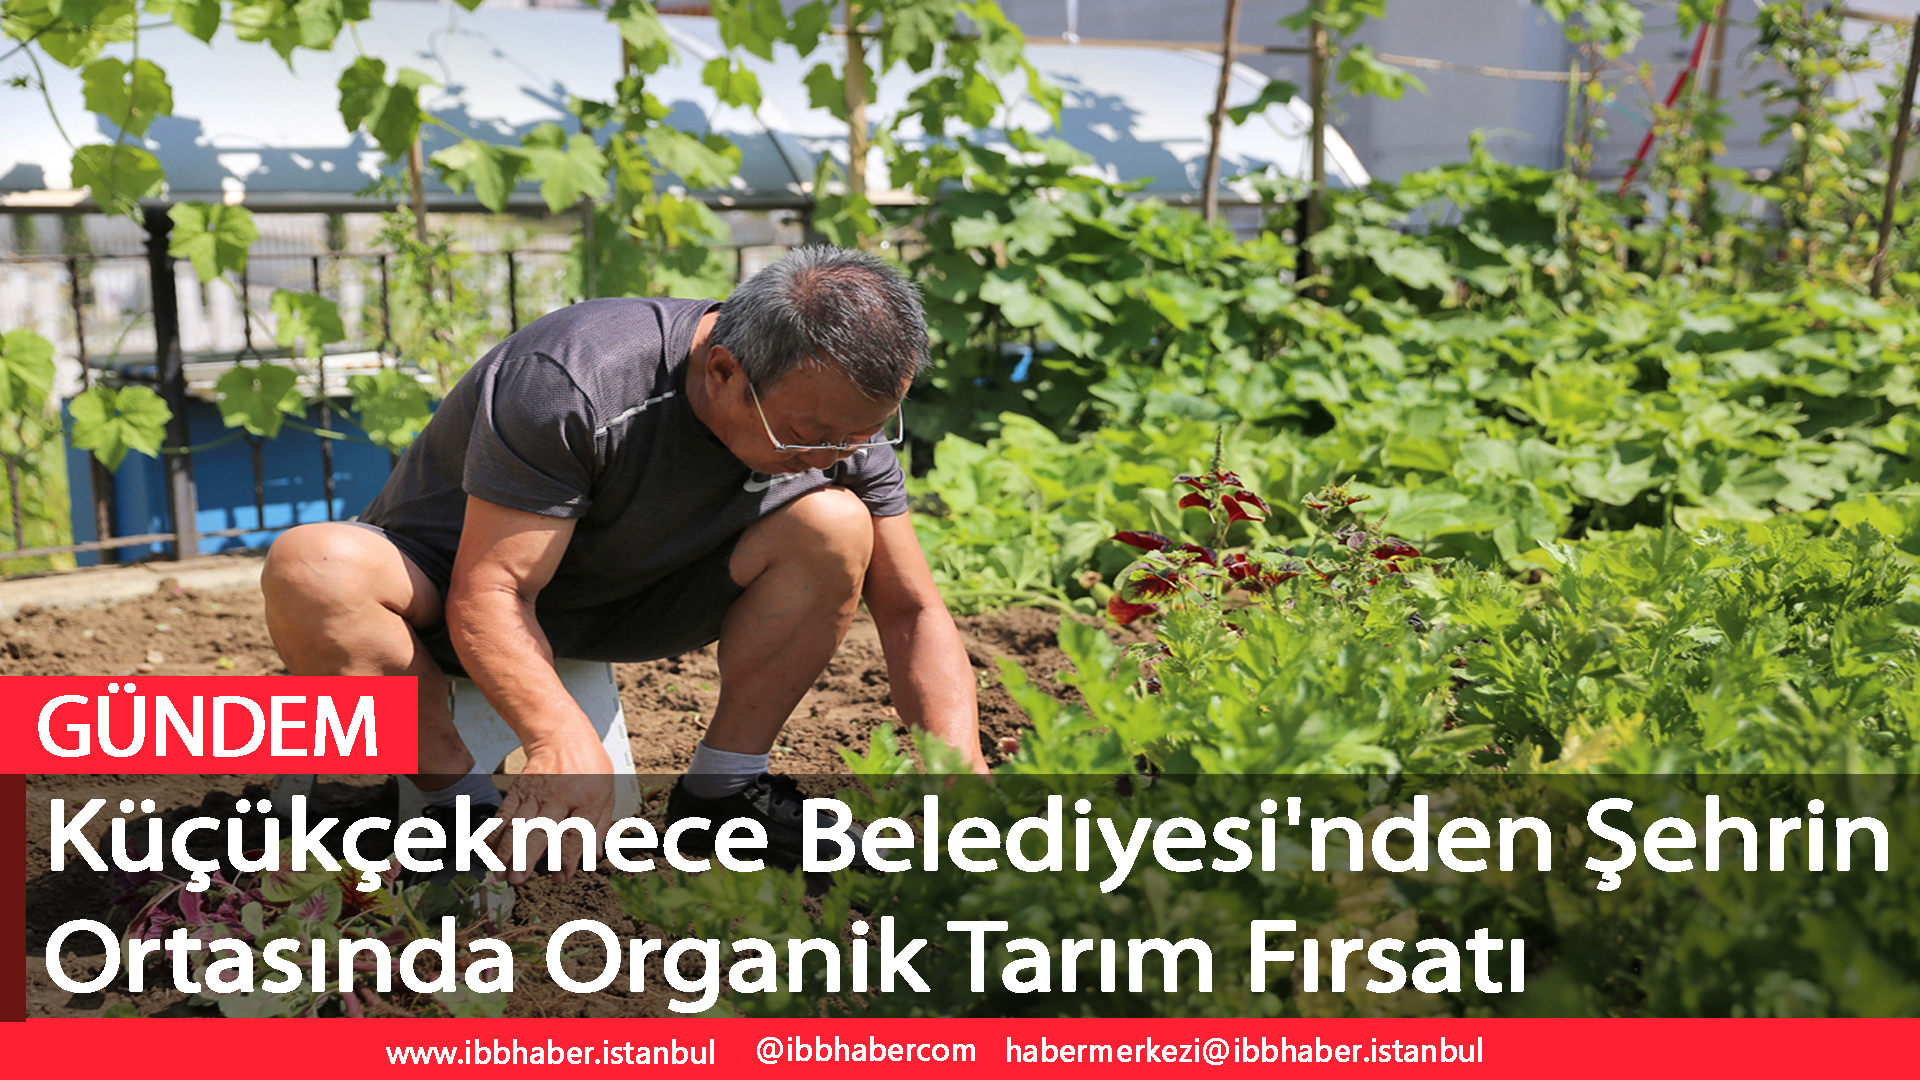 Küçükçekmece Belediyesi'nden Şehrin Ortasında Organik Tarım Fırsatı